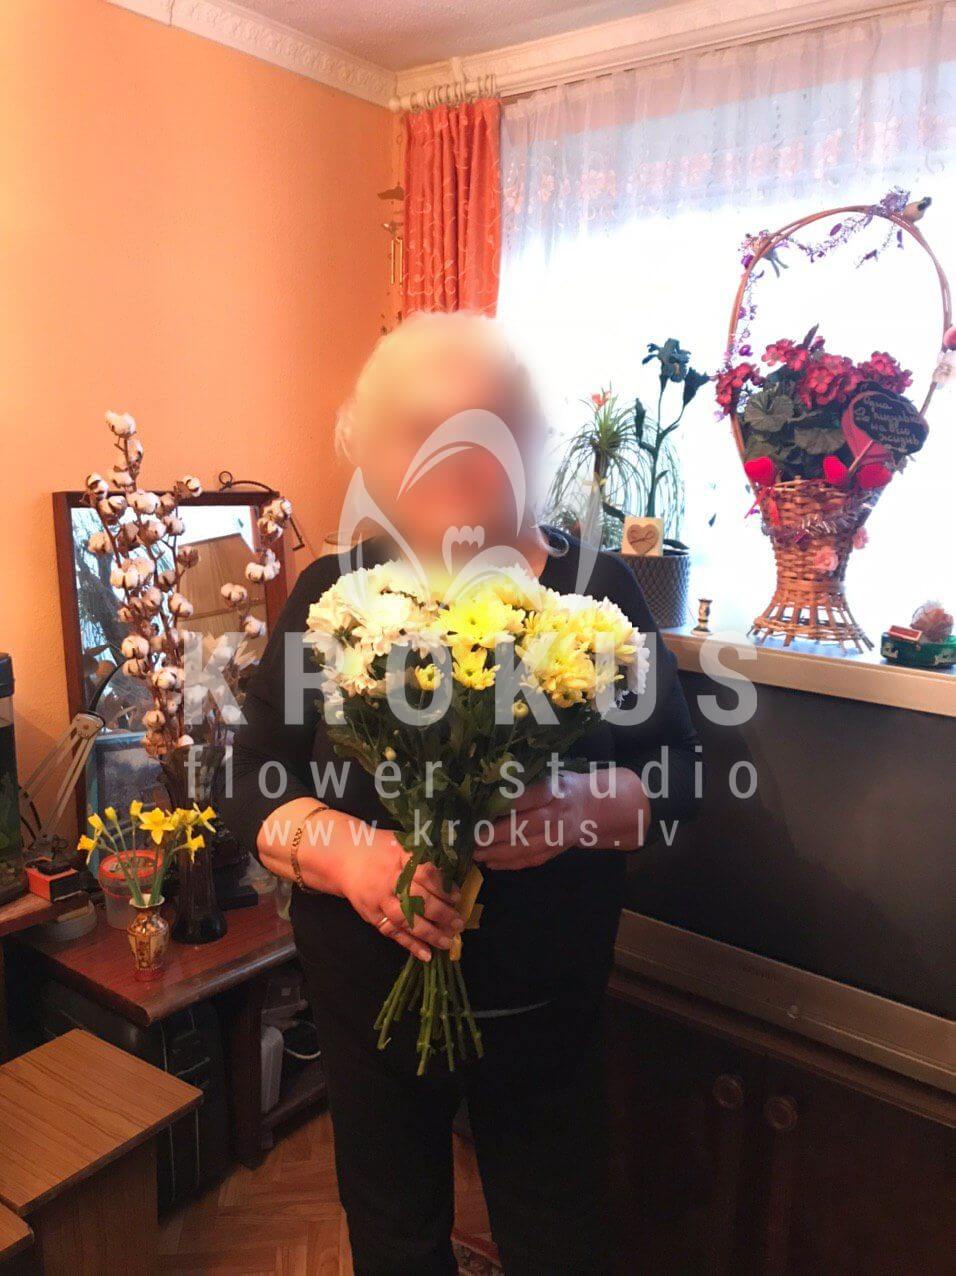 Доставка цветов в город Рига (хризантемы)